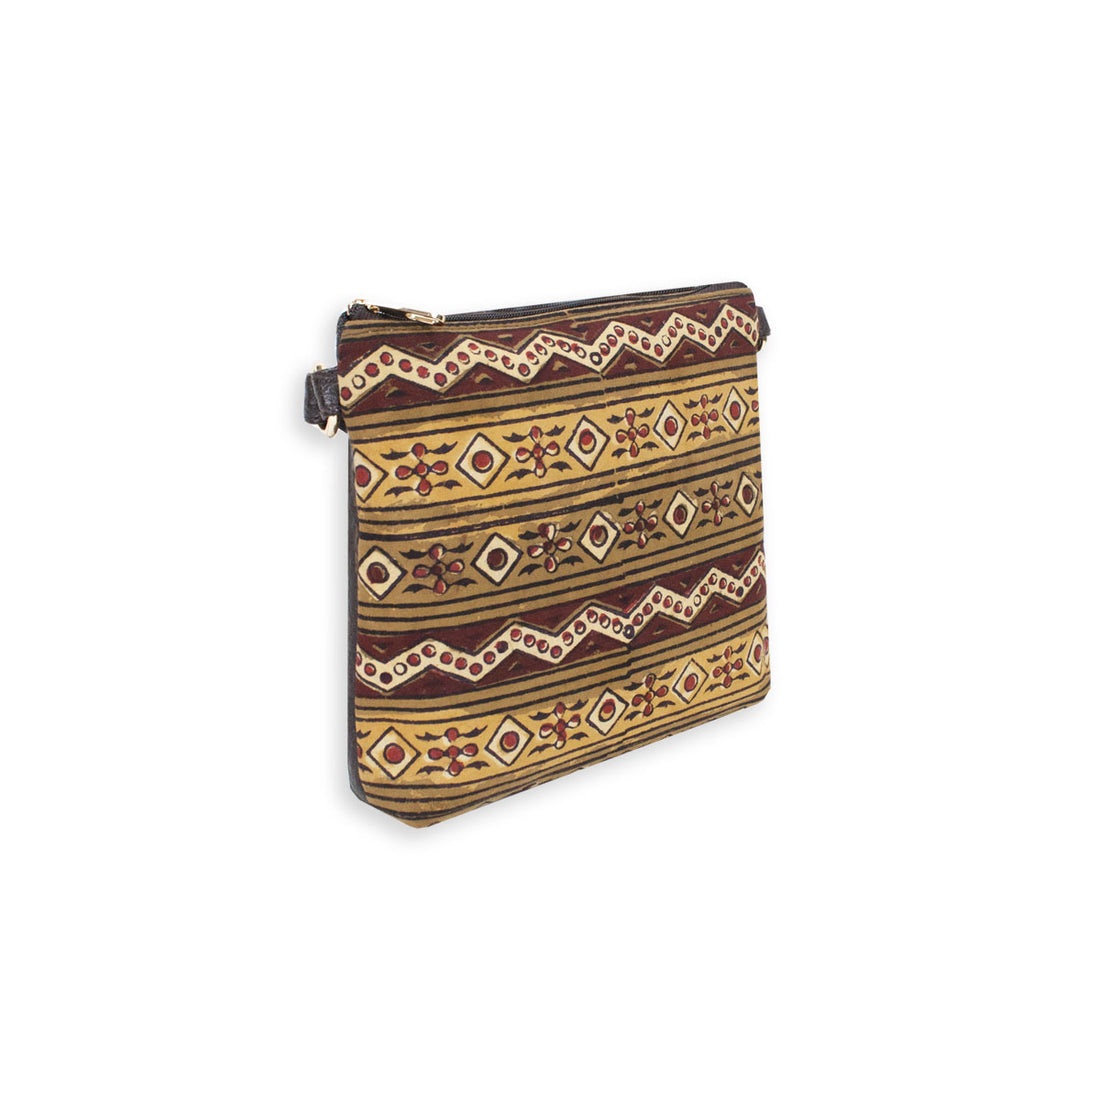 Block-Printed Aztec Sling Bag